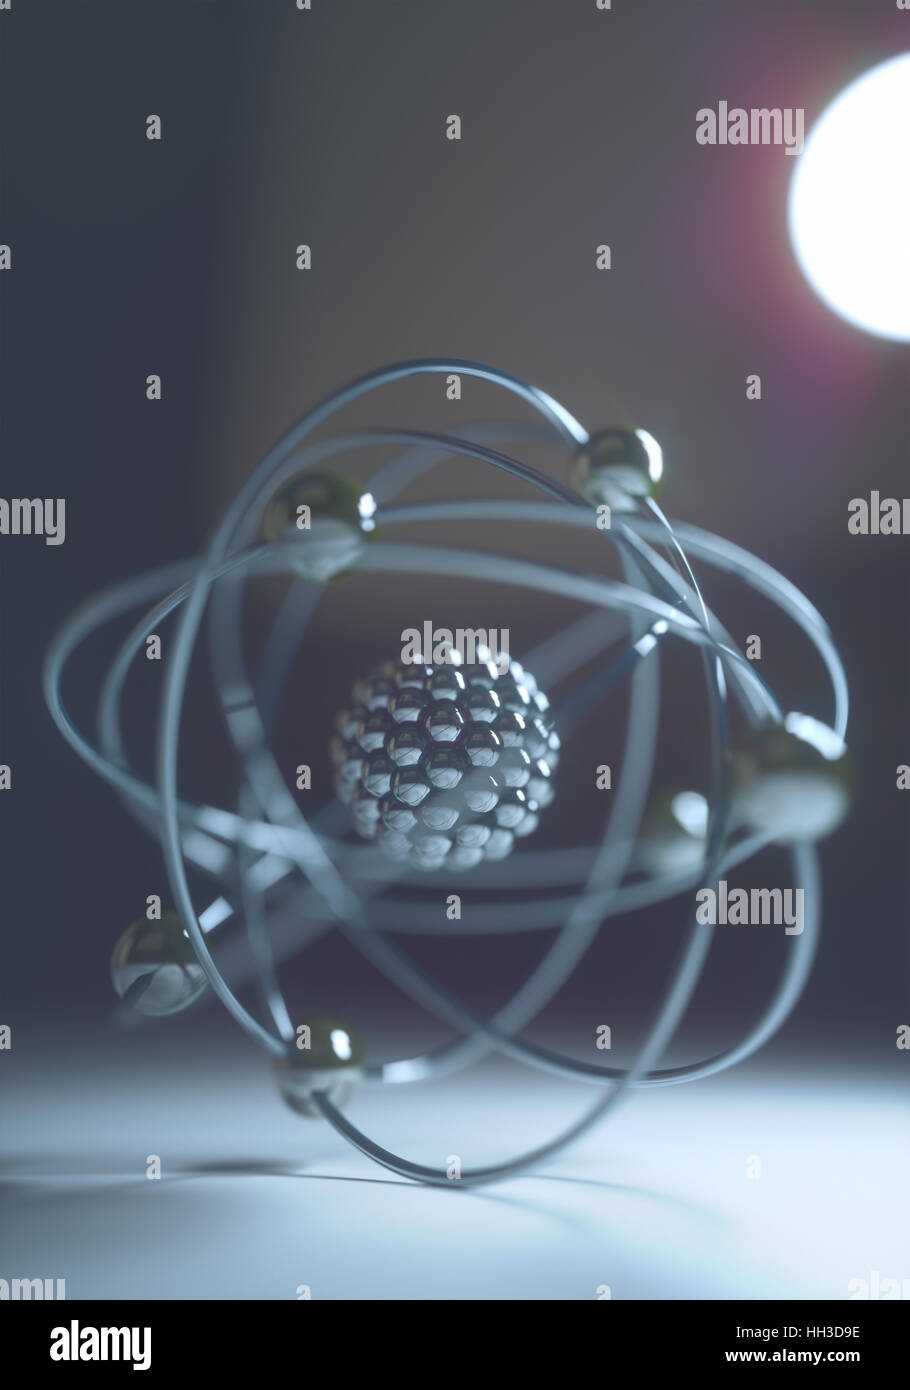 Modello atomico in equilibrio con la luce posteriore. Concetto di immagine della fisica e della chimica. Foto Stock